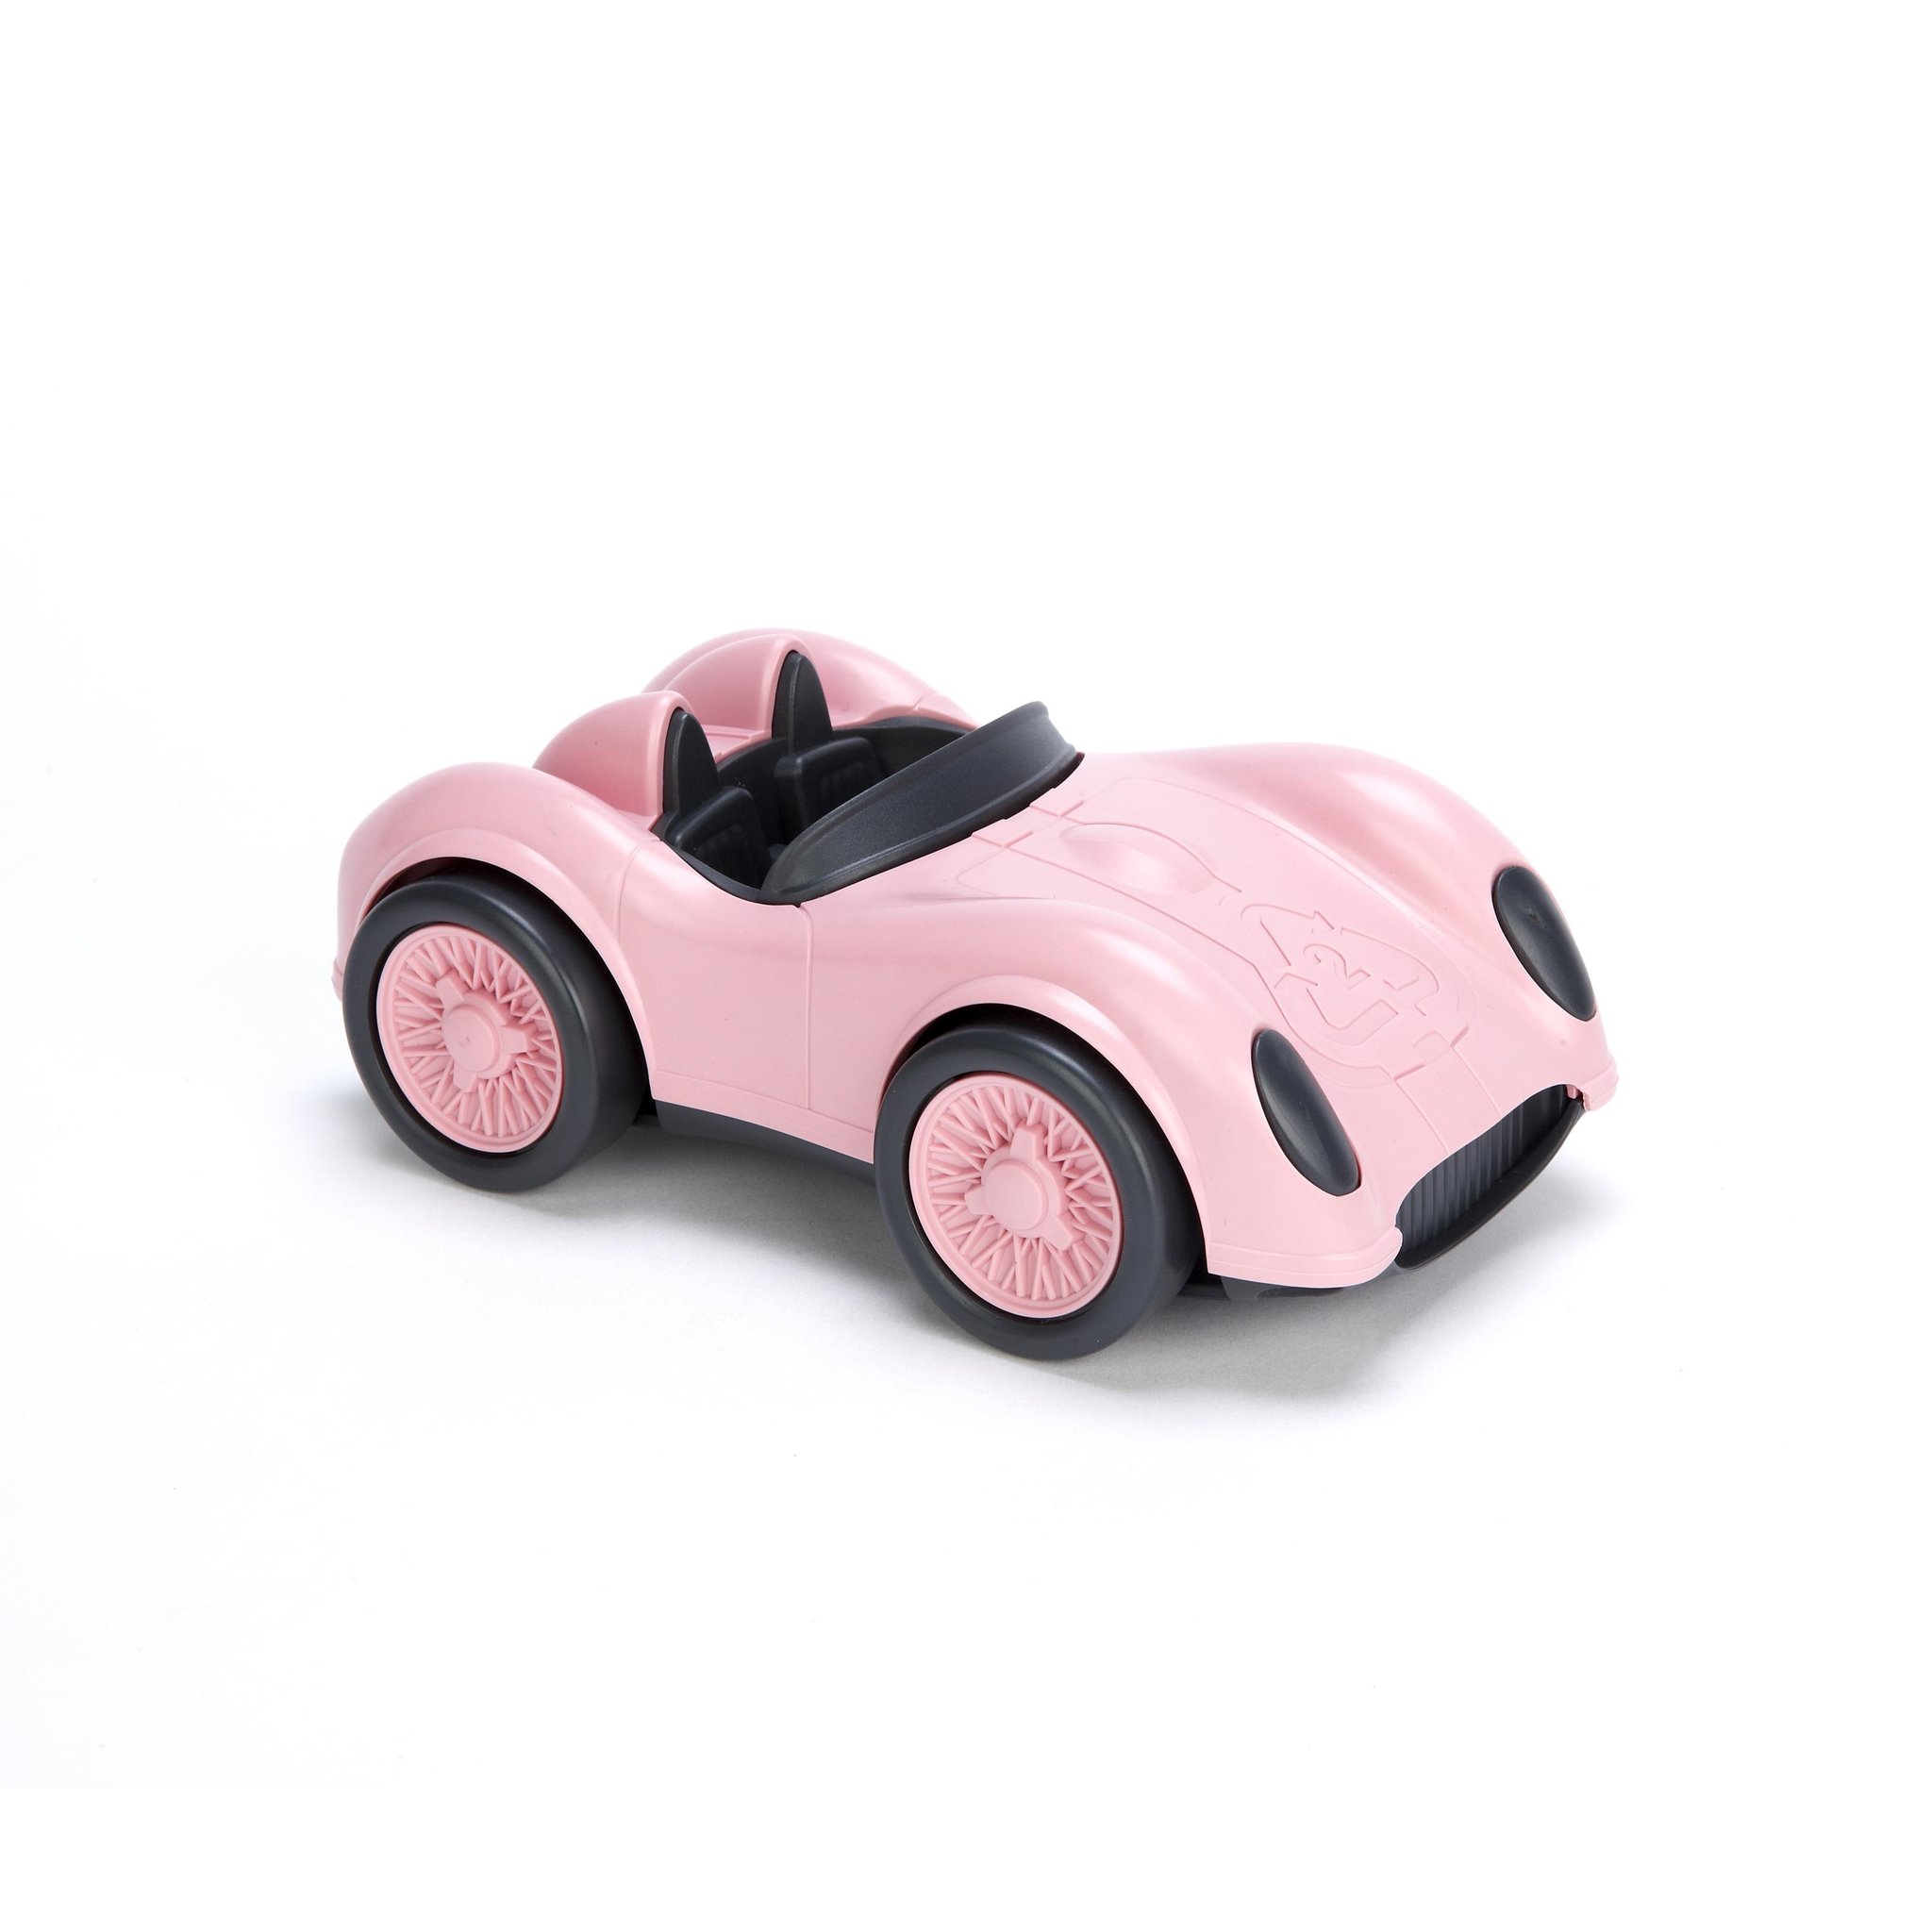 Race car pink